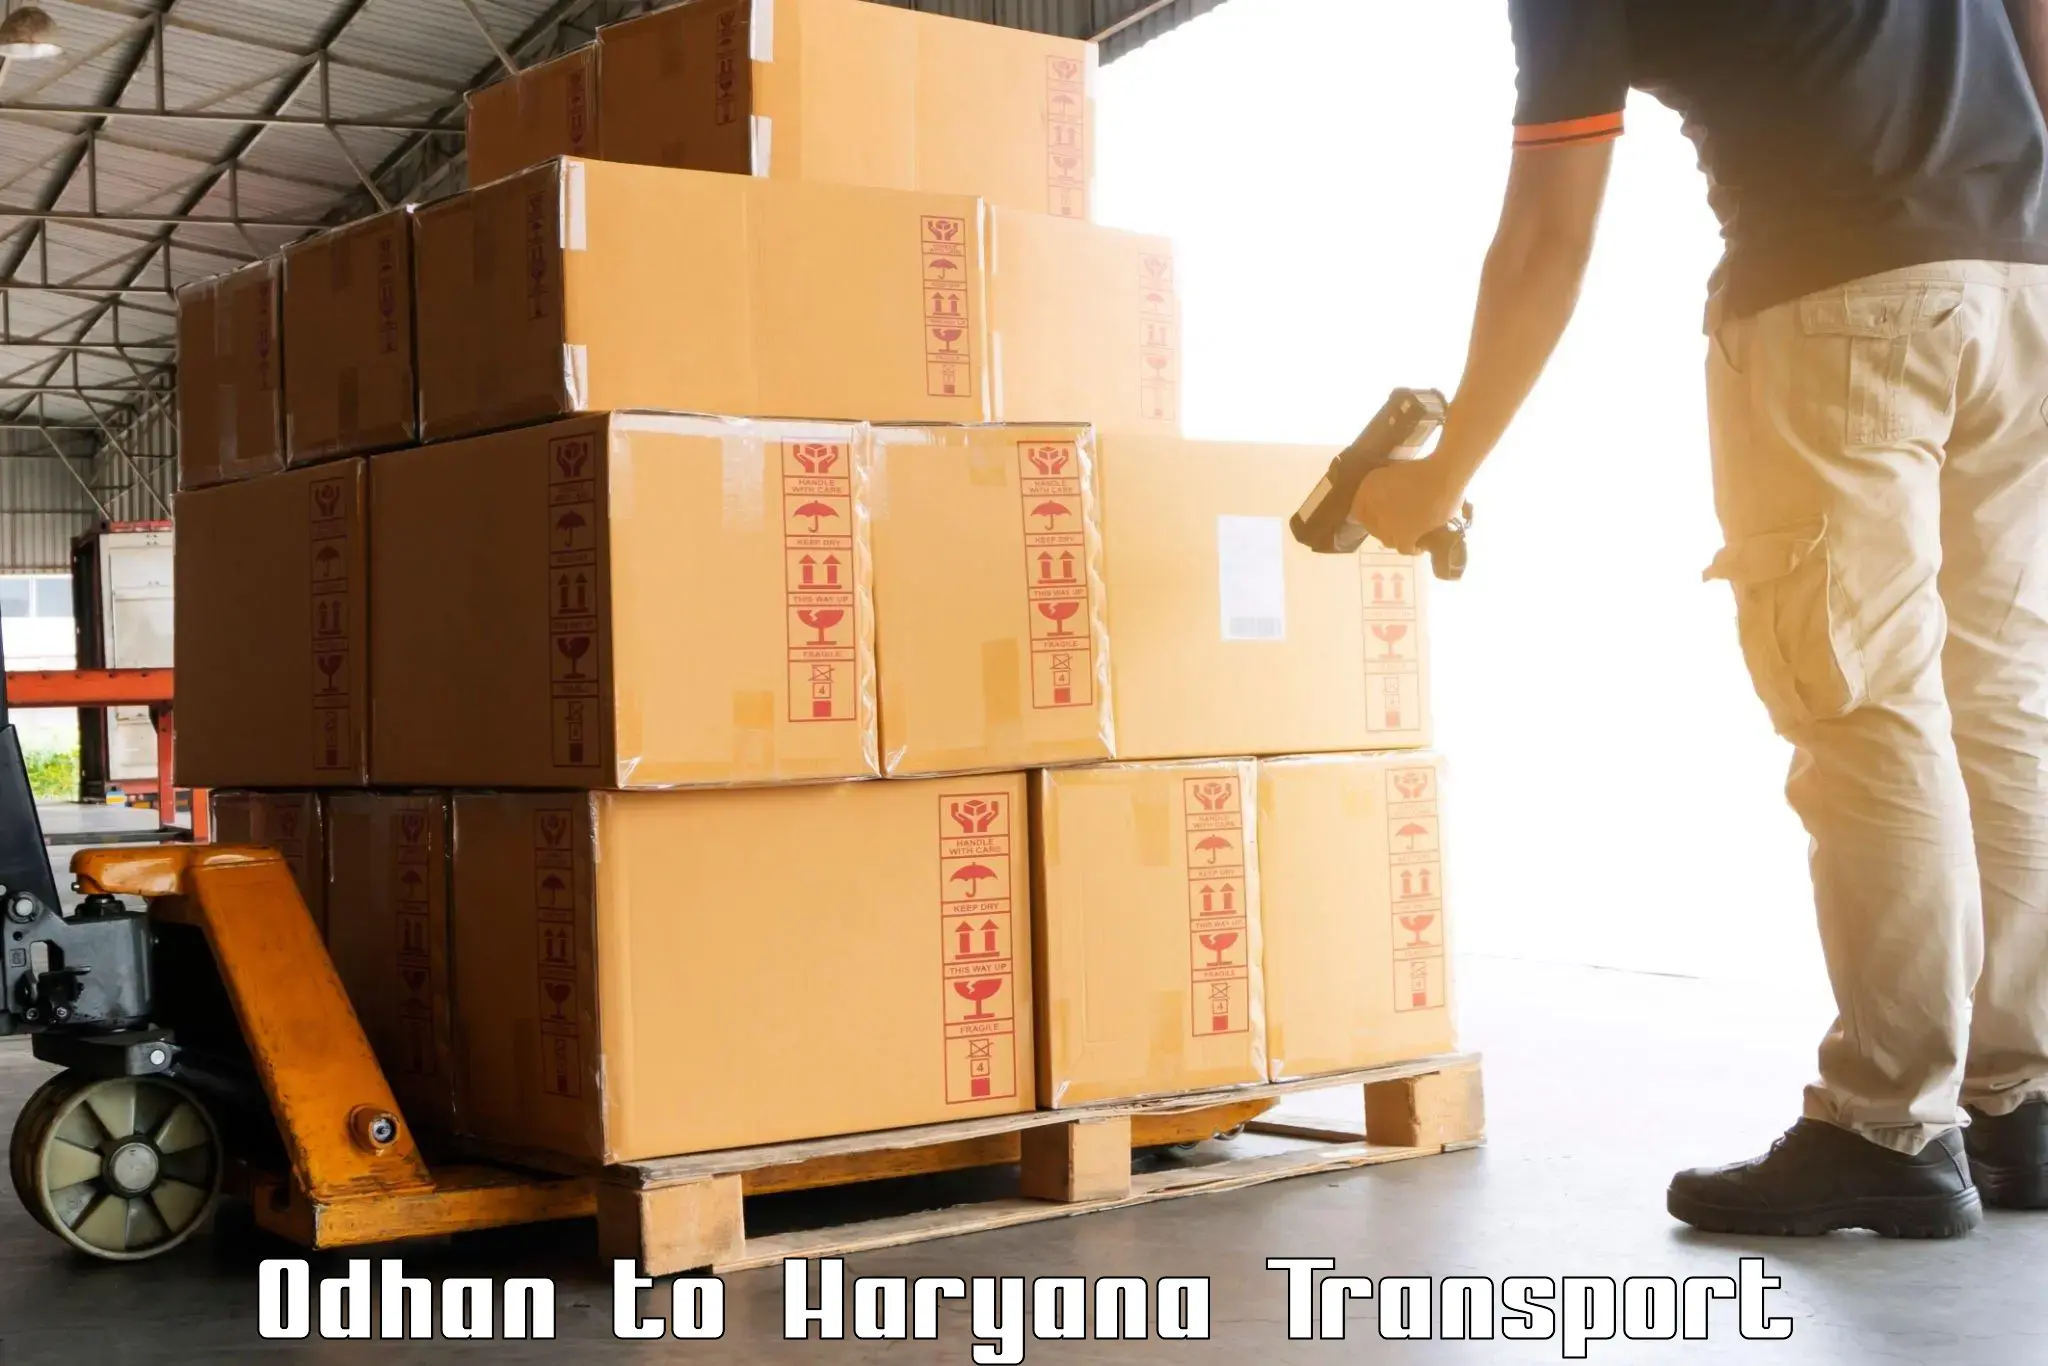 Furniture transport service Odhan to Gurgaon